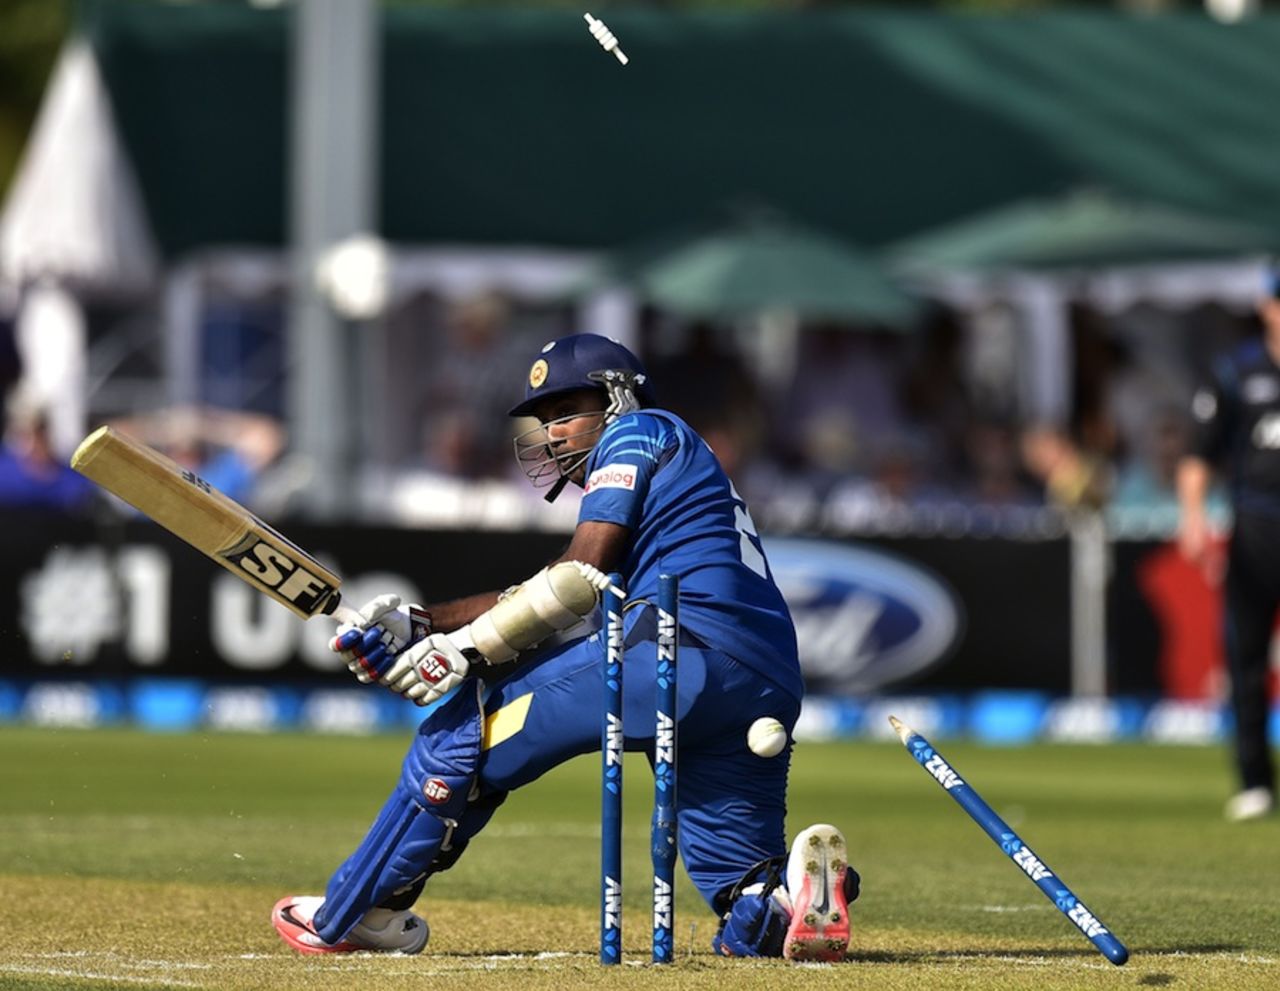 Mahela Jayawardene was bowled trying to paddle sweep, New Zealand v Sri Lanka, 5th ODI, Dunedin, January 23, 2015